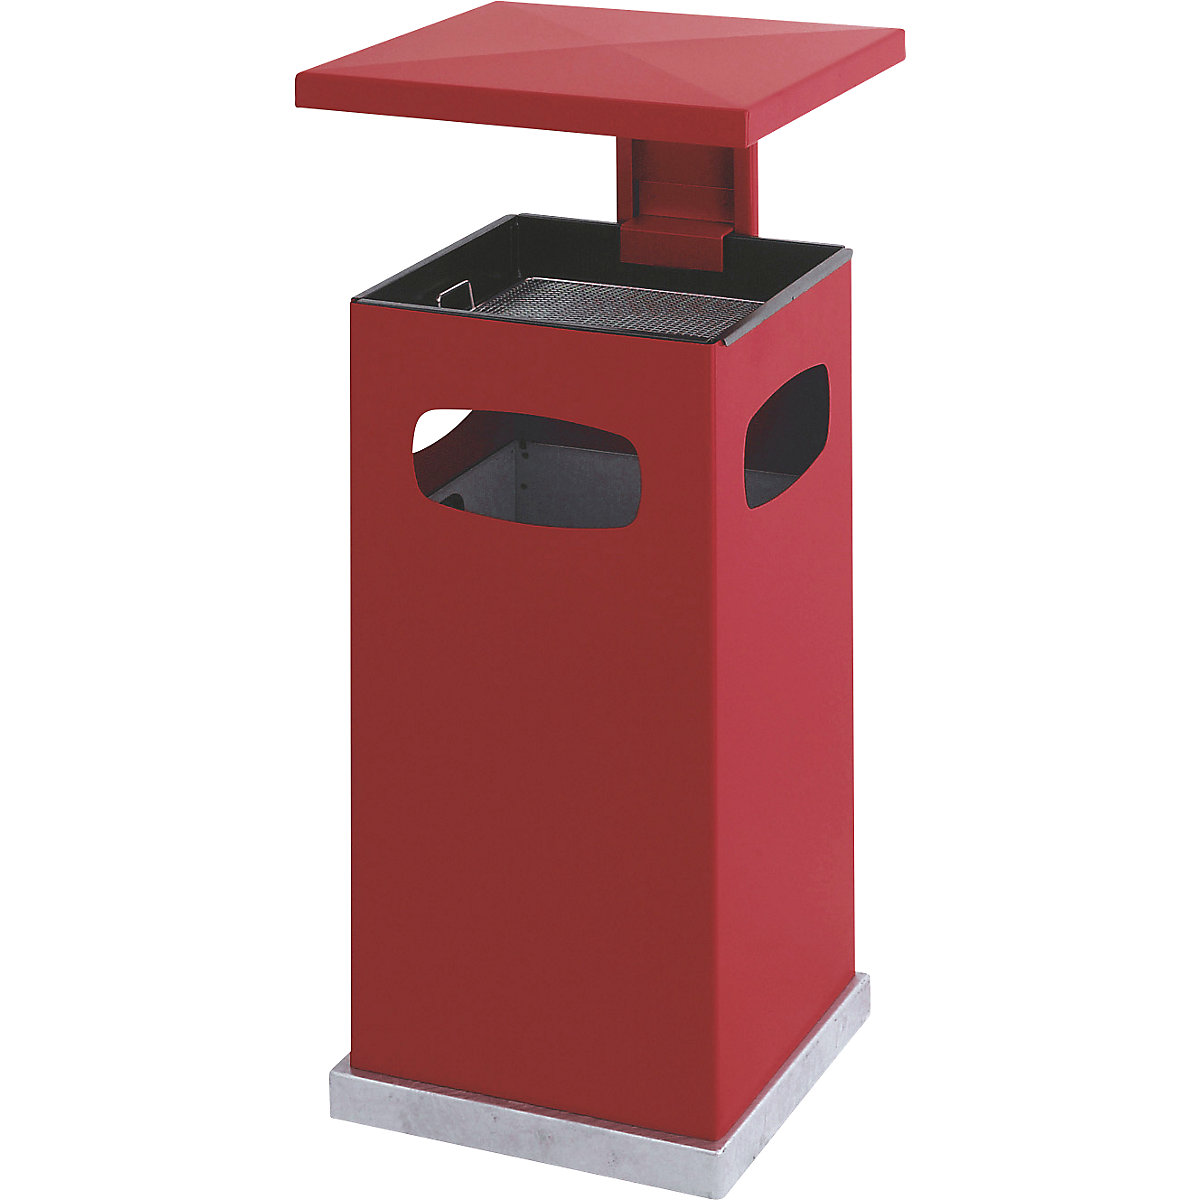 Colector de residuos con cenicero interior y tejadillo, capacidad 38 l, A x H x P 395 x 910 x 395 mm, rojo vivo